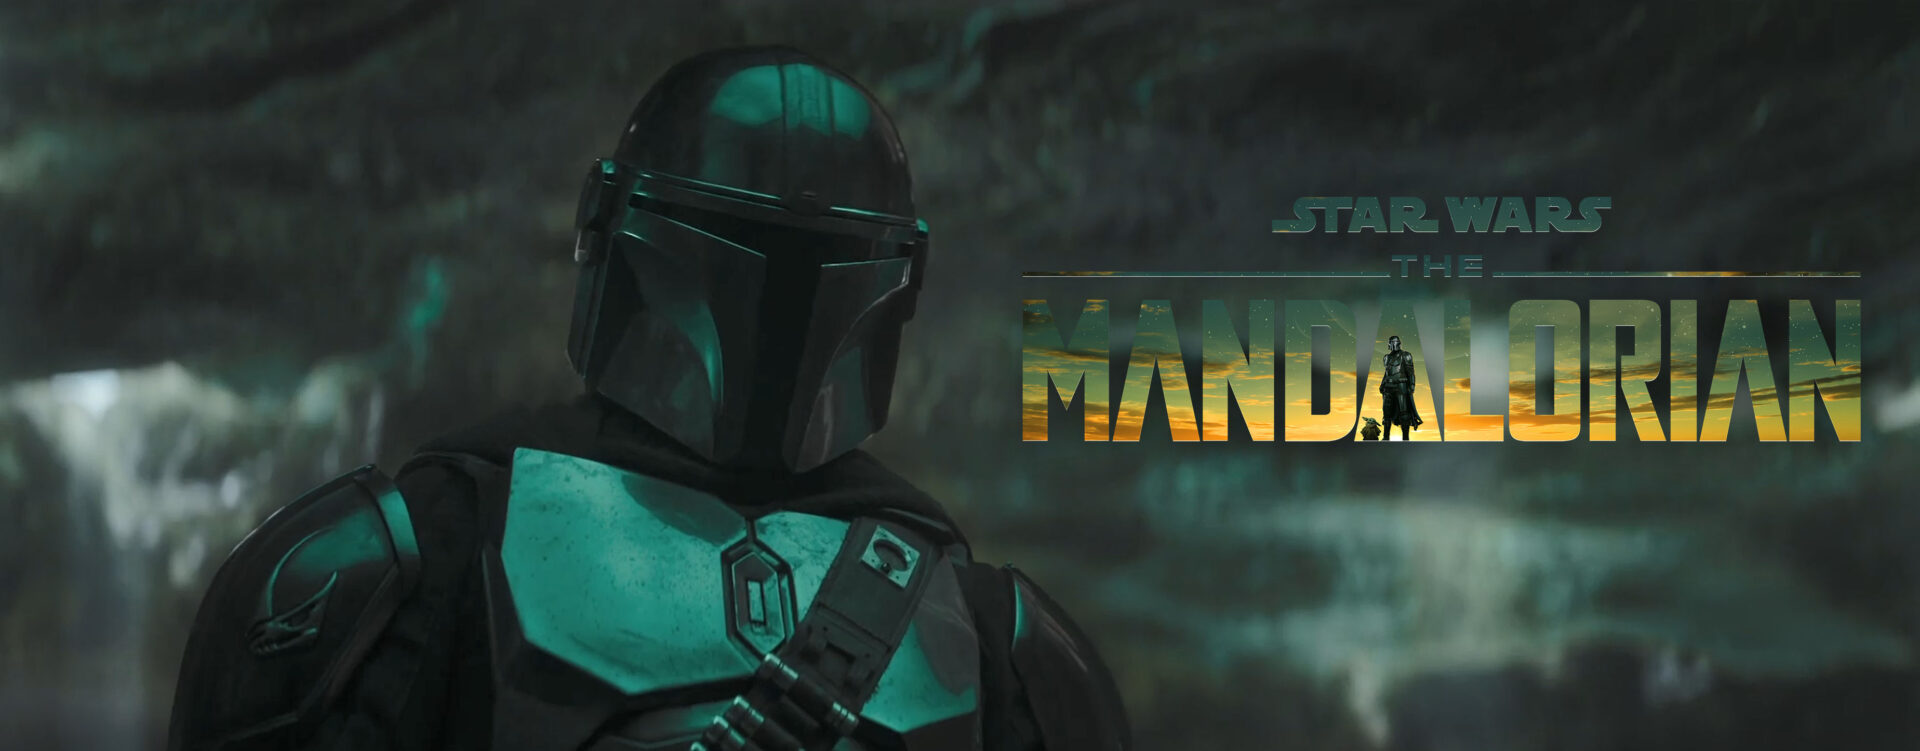 mandalorian s3 teaser trailer banner